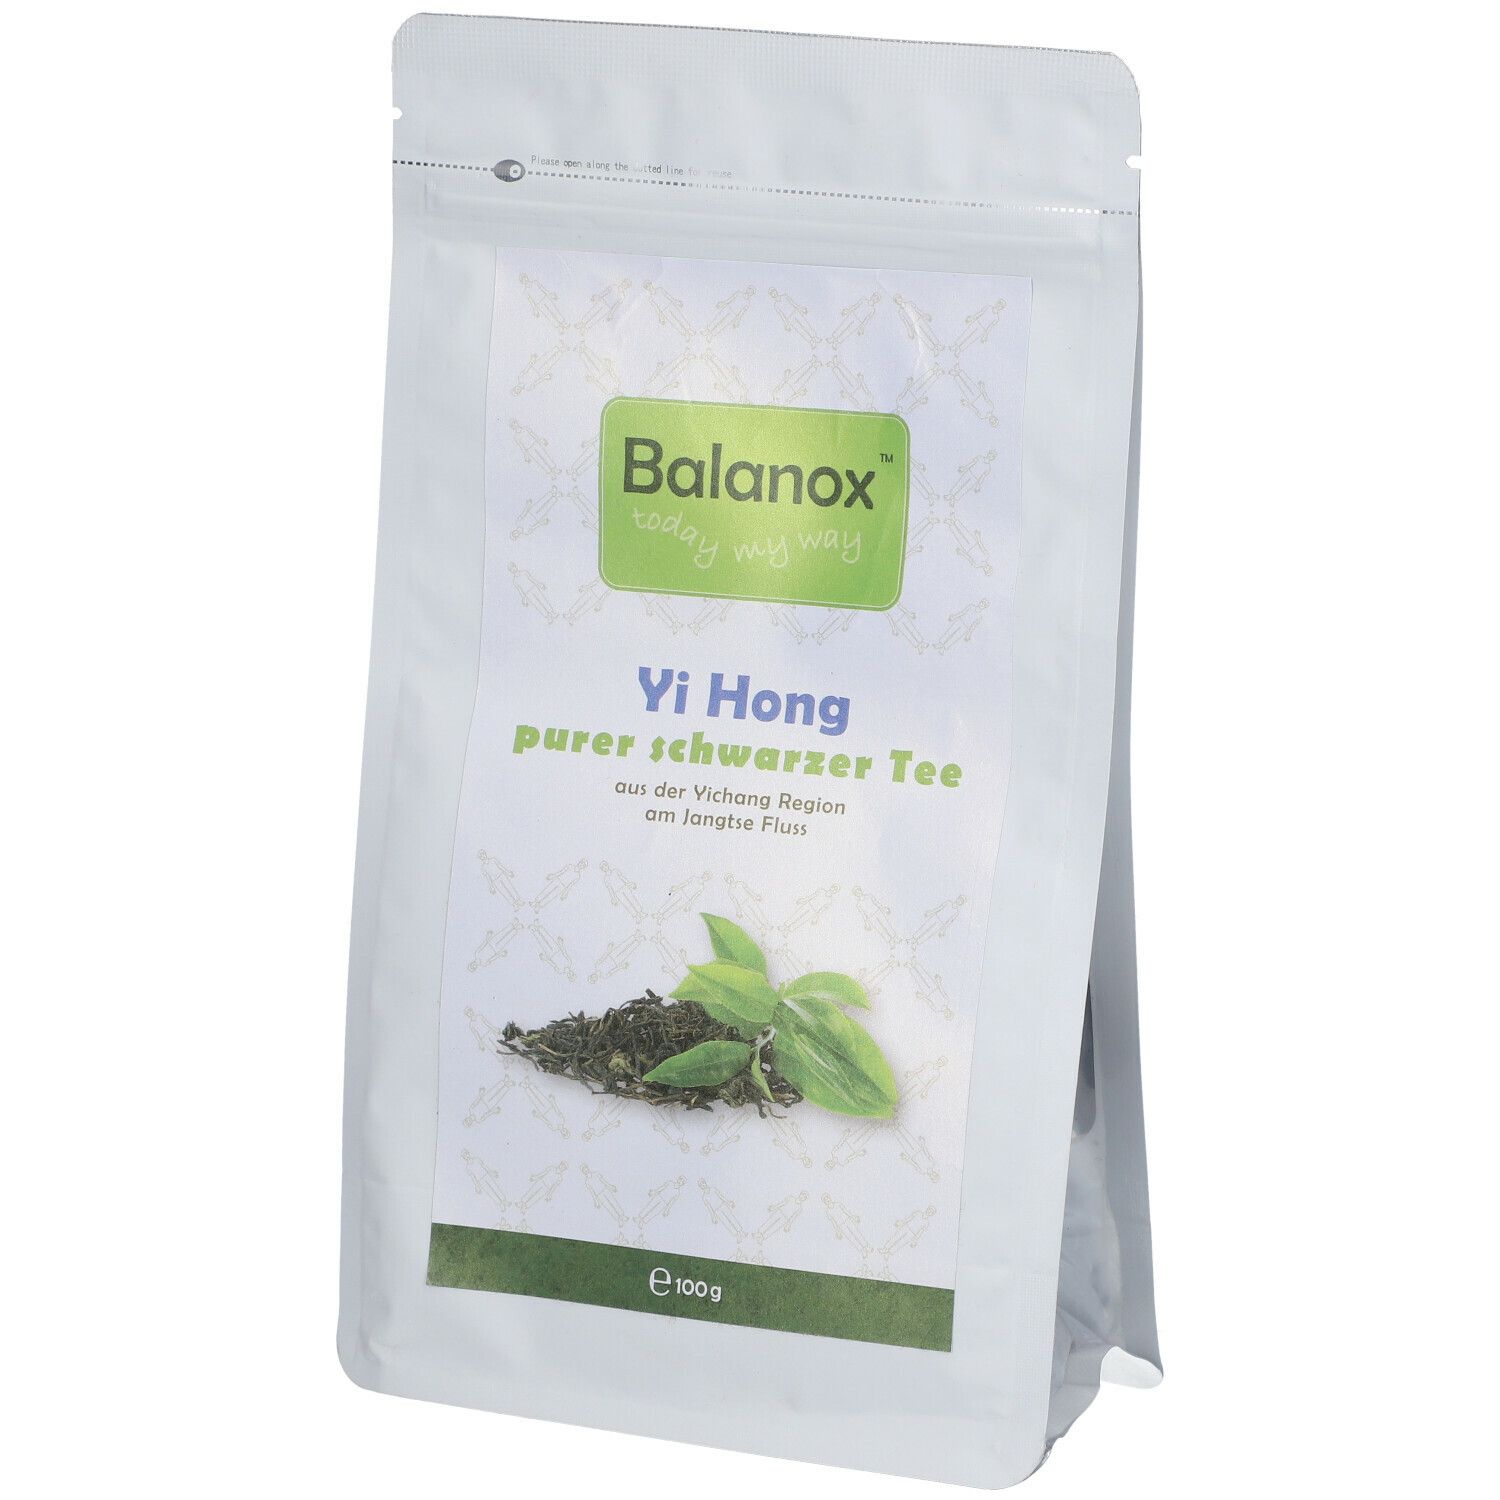 Balanox™ Yi Hong: purer schwarzer Tee